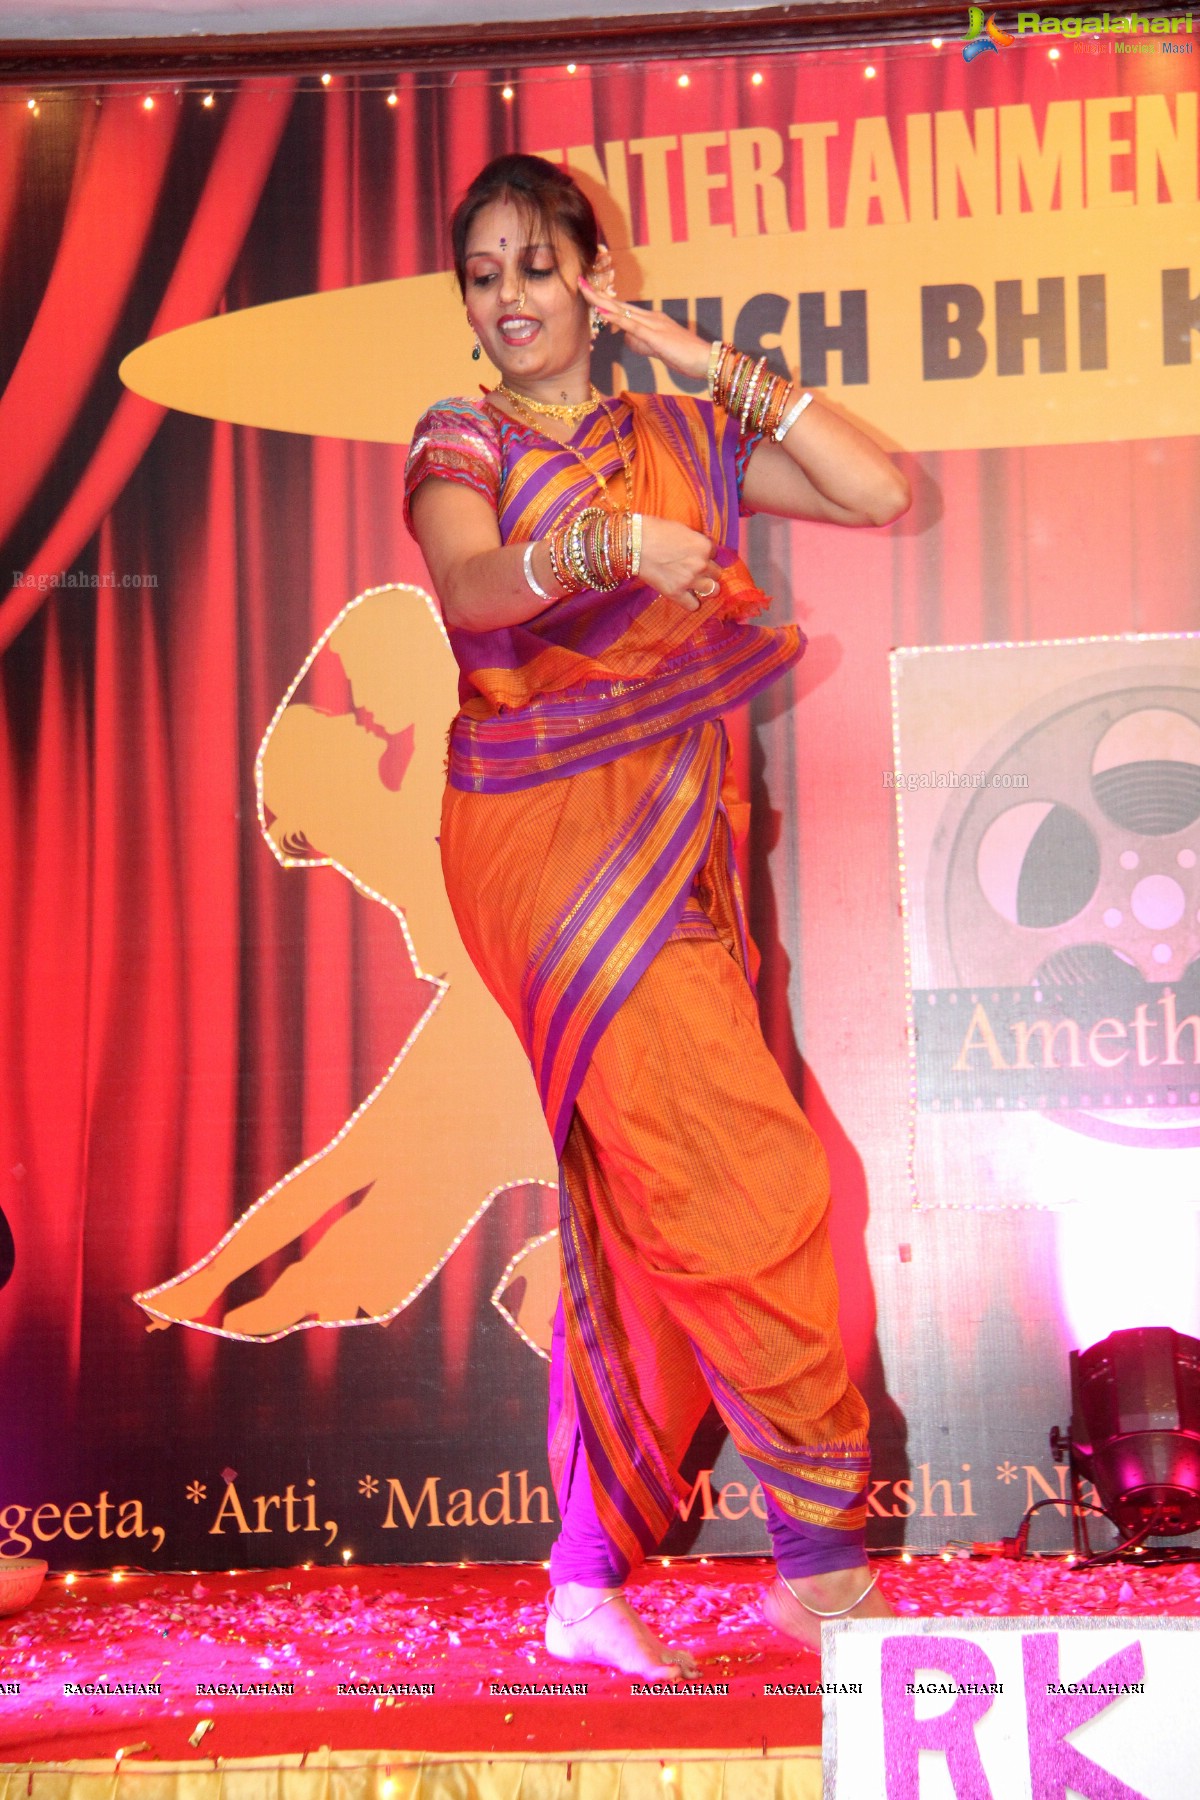 Samanvay Ladies Club's 'Entertainment Ke Liye - Kuch Bhi Karega' Event